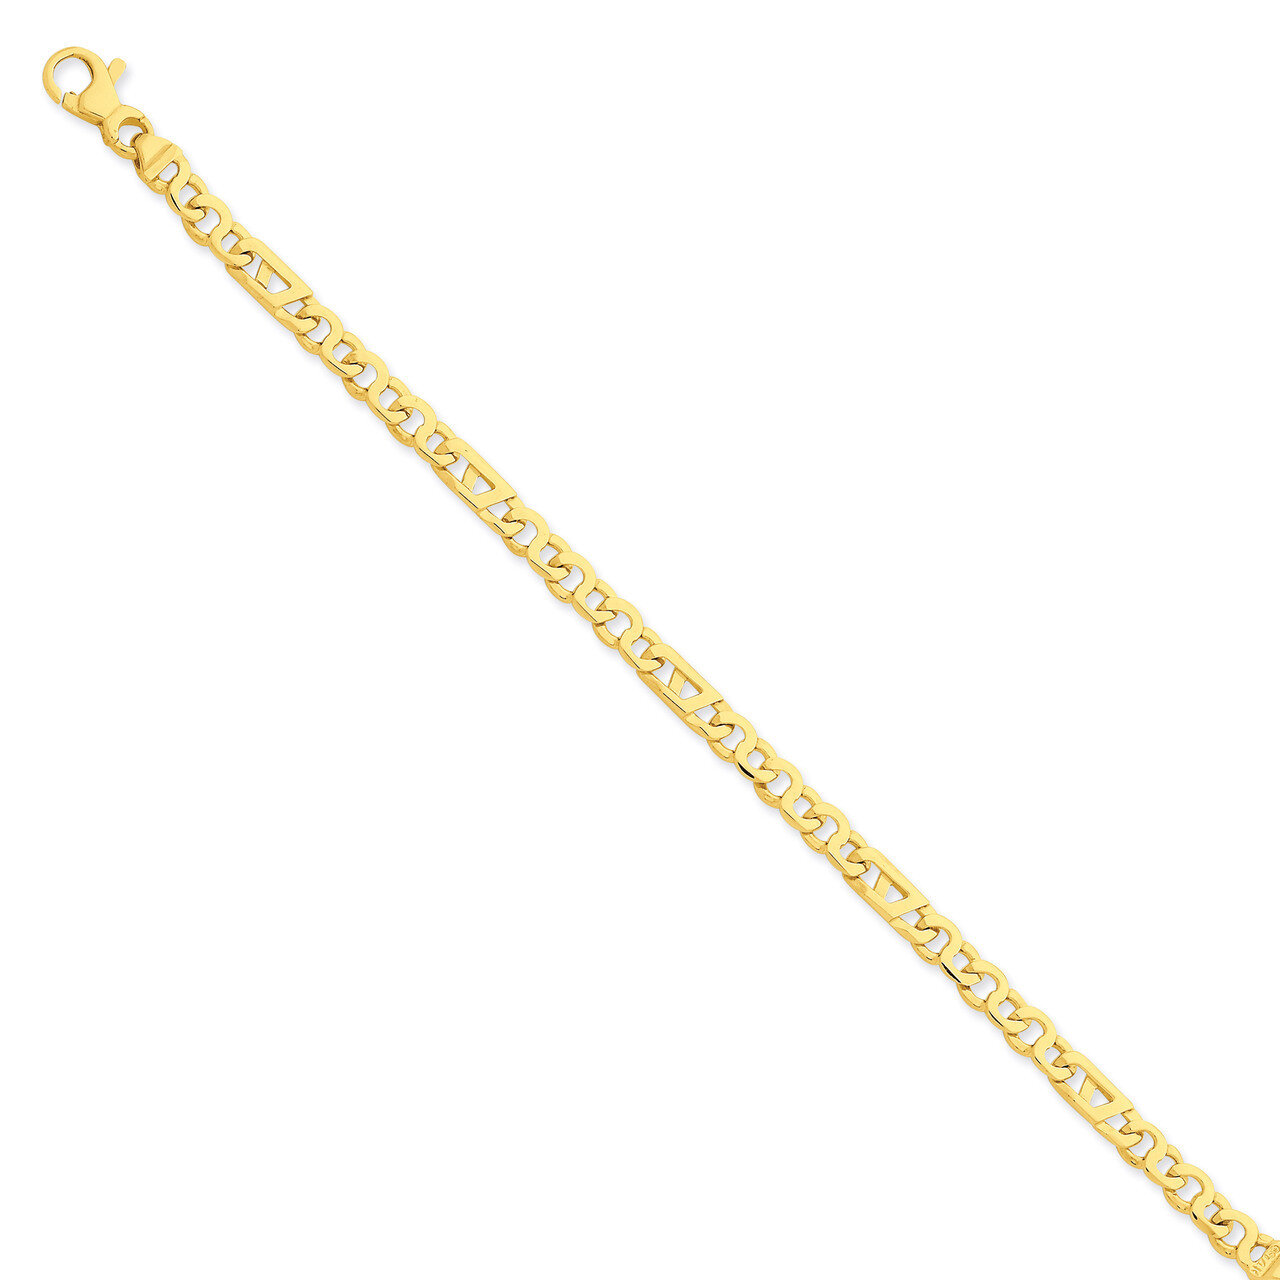 Fancy Link Chain 22 Inch 14k Gold LK670-22